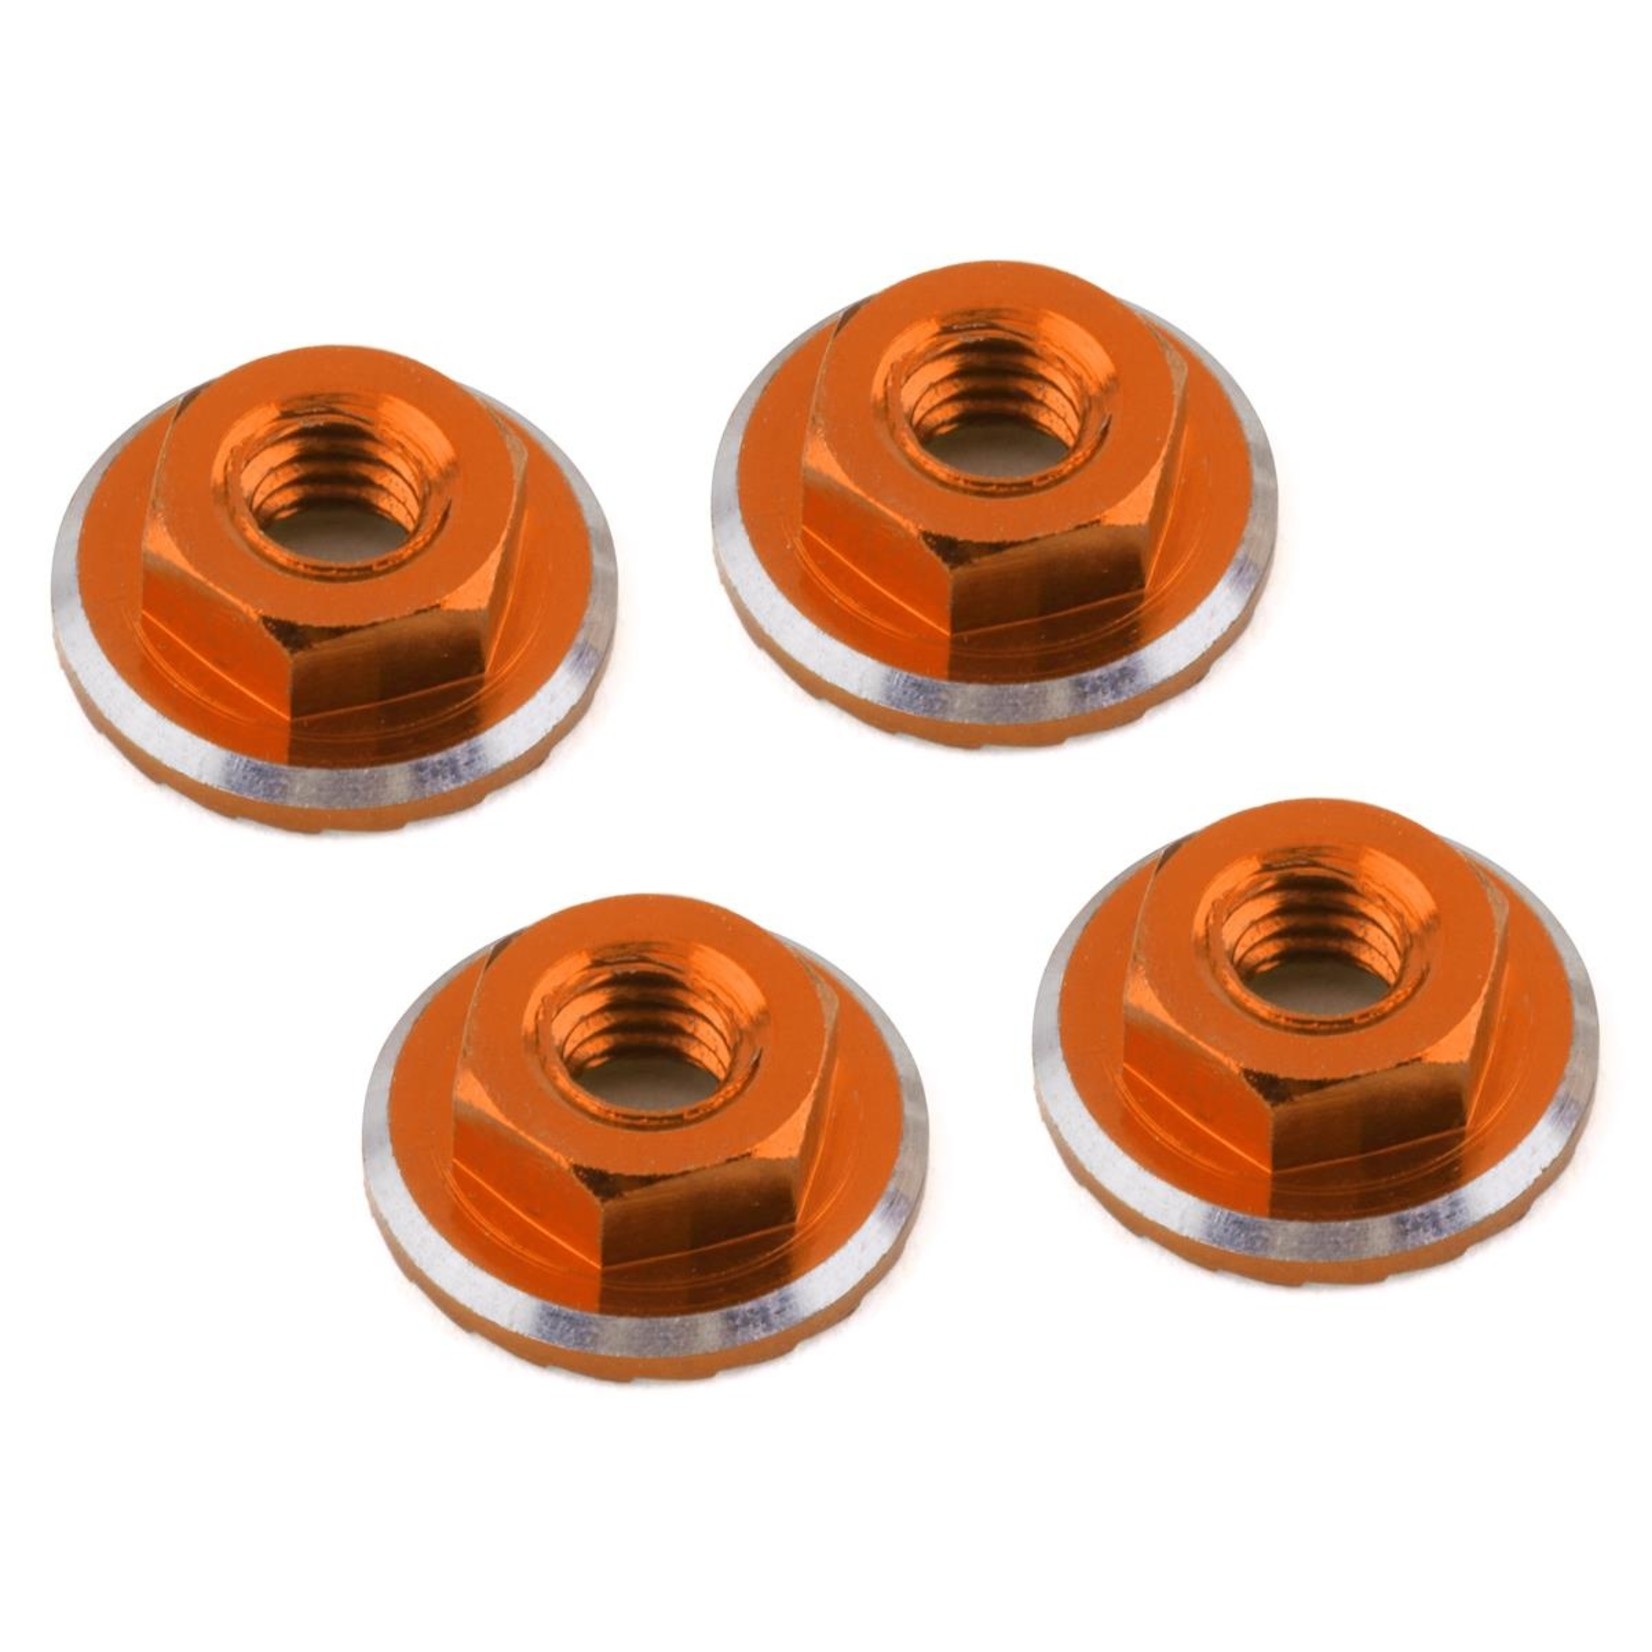 1UP Racing 1UP Racing Lockdown UltraLite 4mm Serrated Wheel Nuts (Orange) (4) #80551